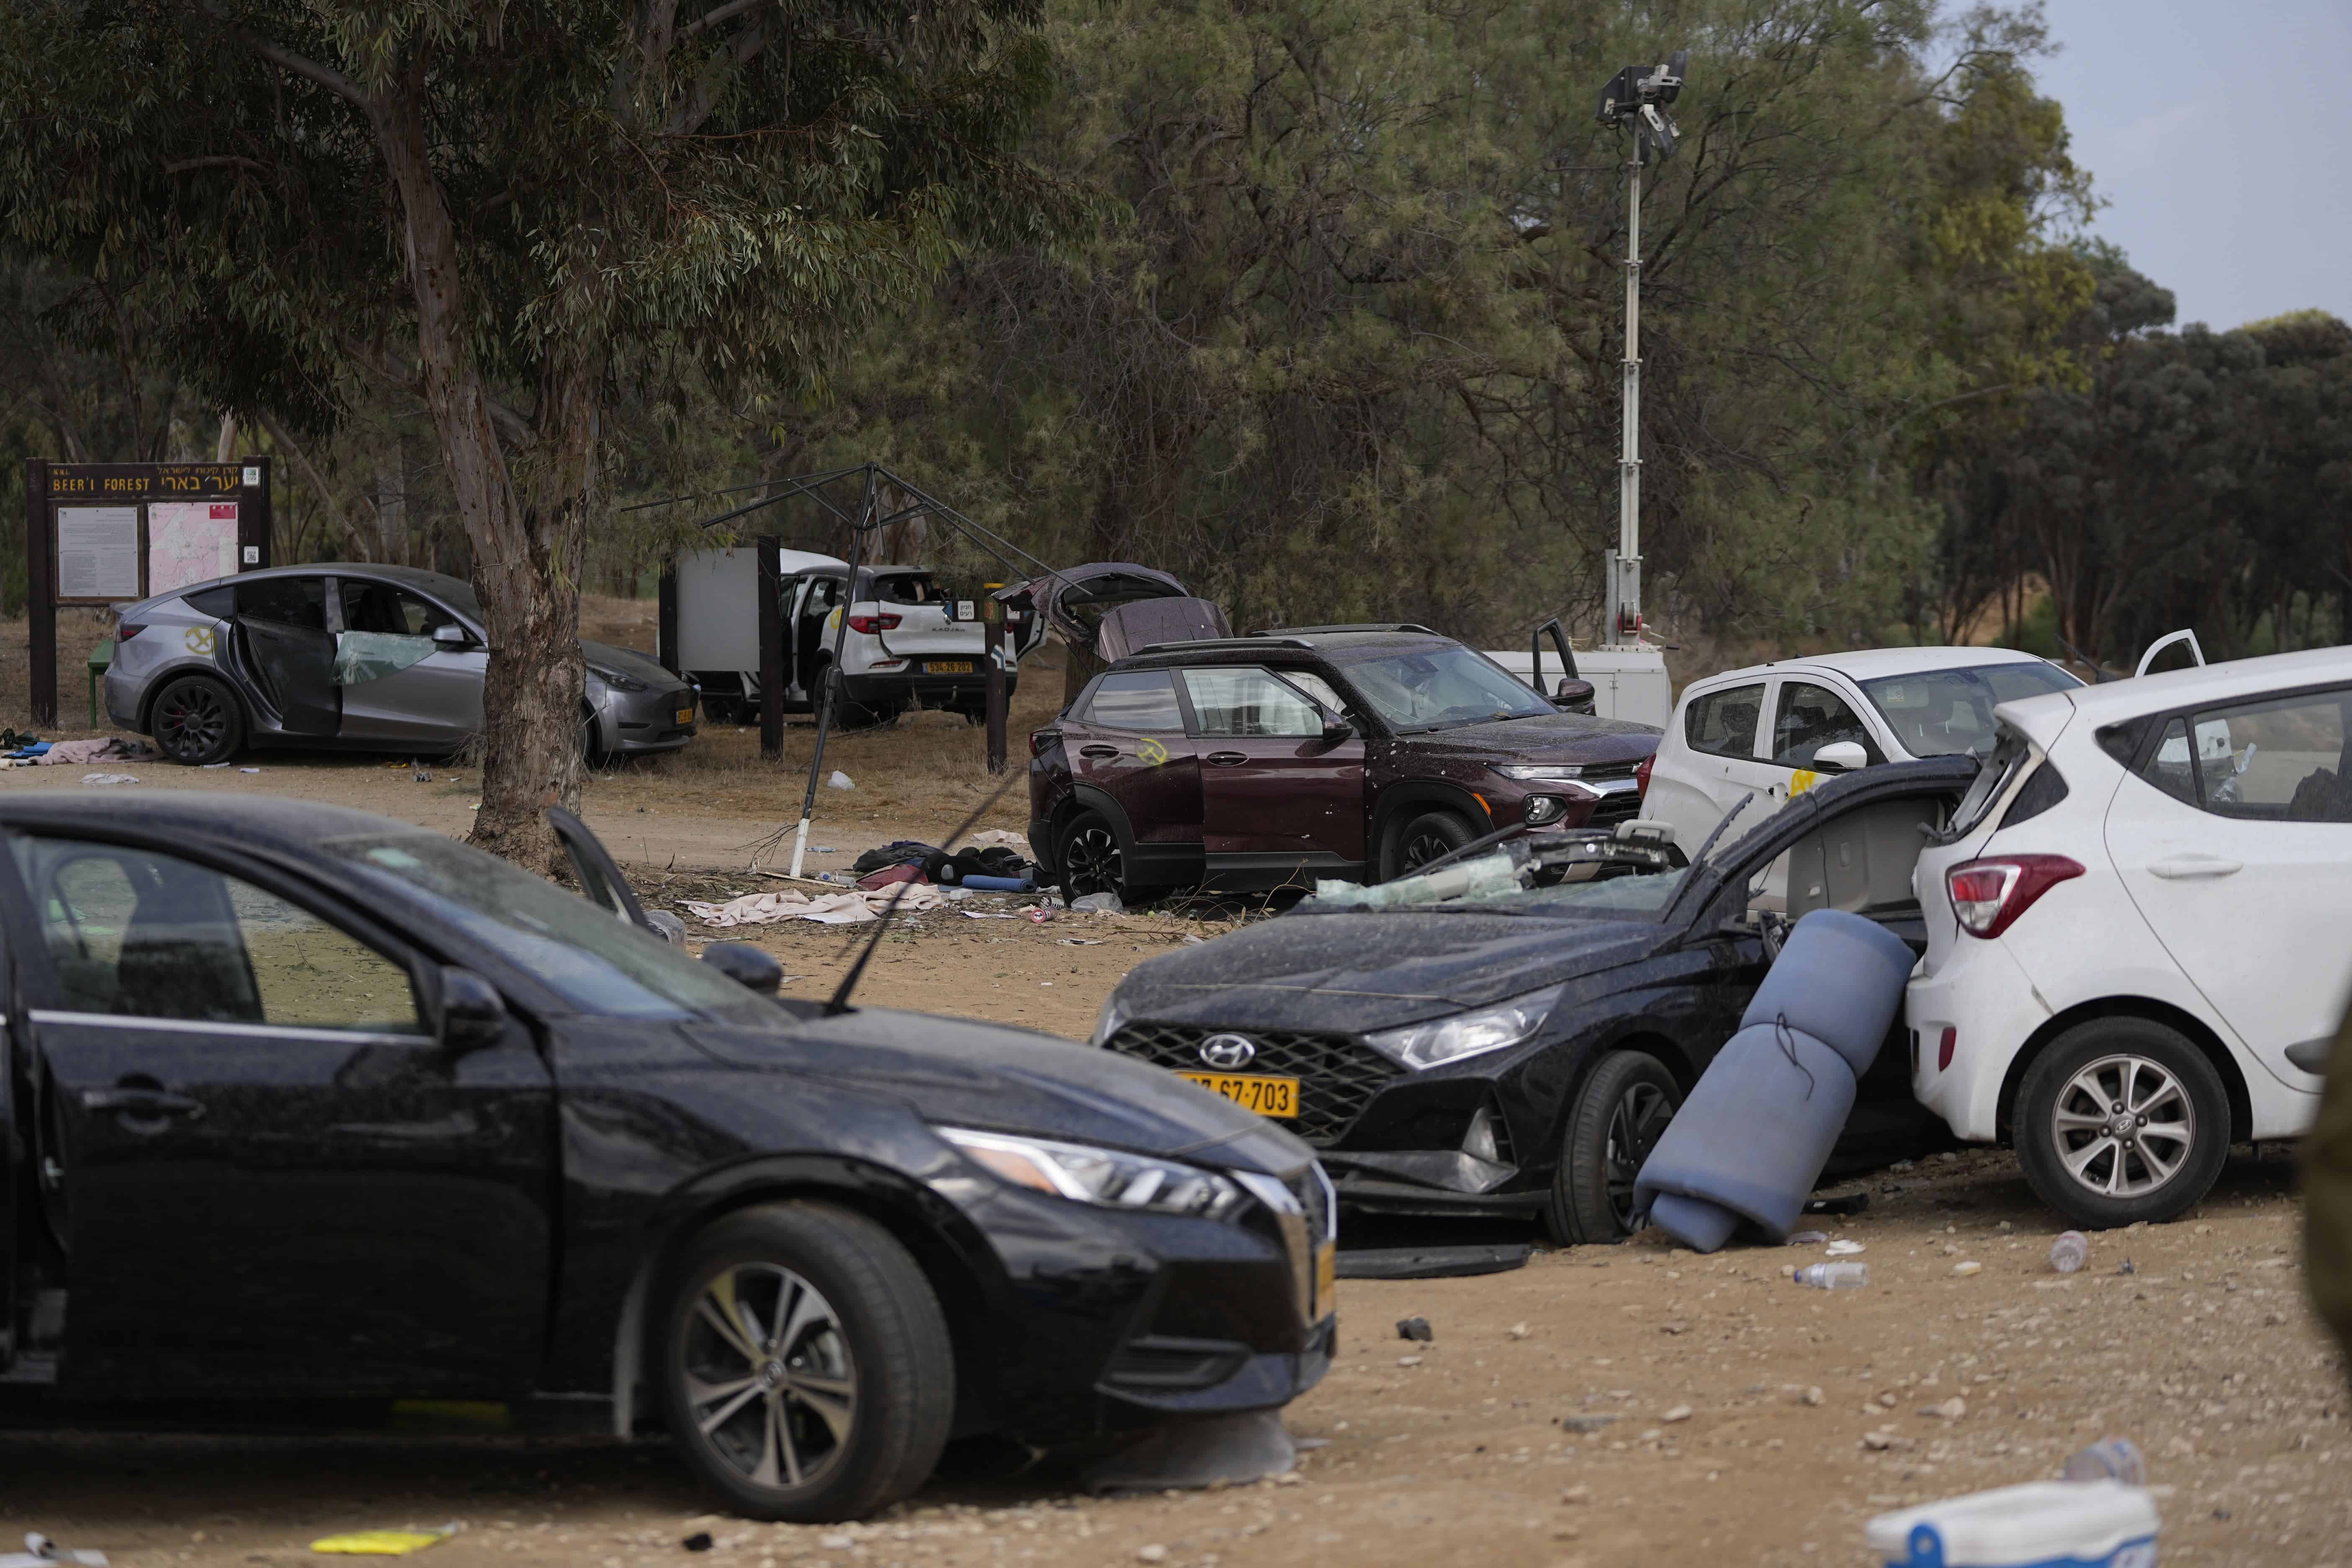 Vehículos dañados en la zona de un festival de música cerca del kibbutz Reim, cerca del muro fronterizo con la Franja de Gaza.